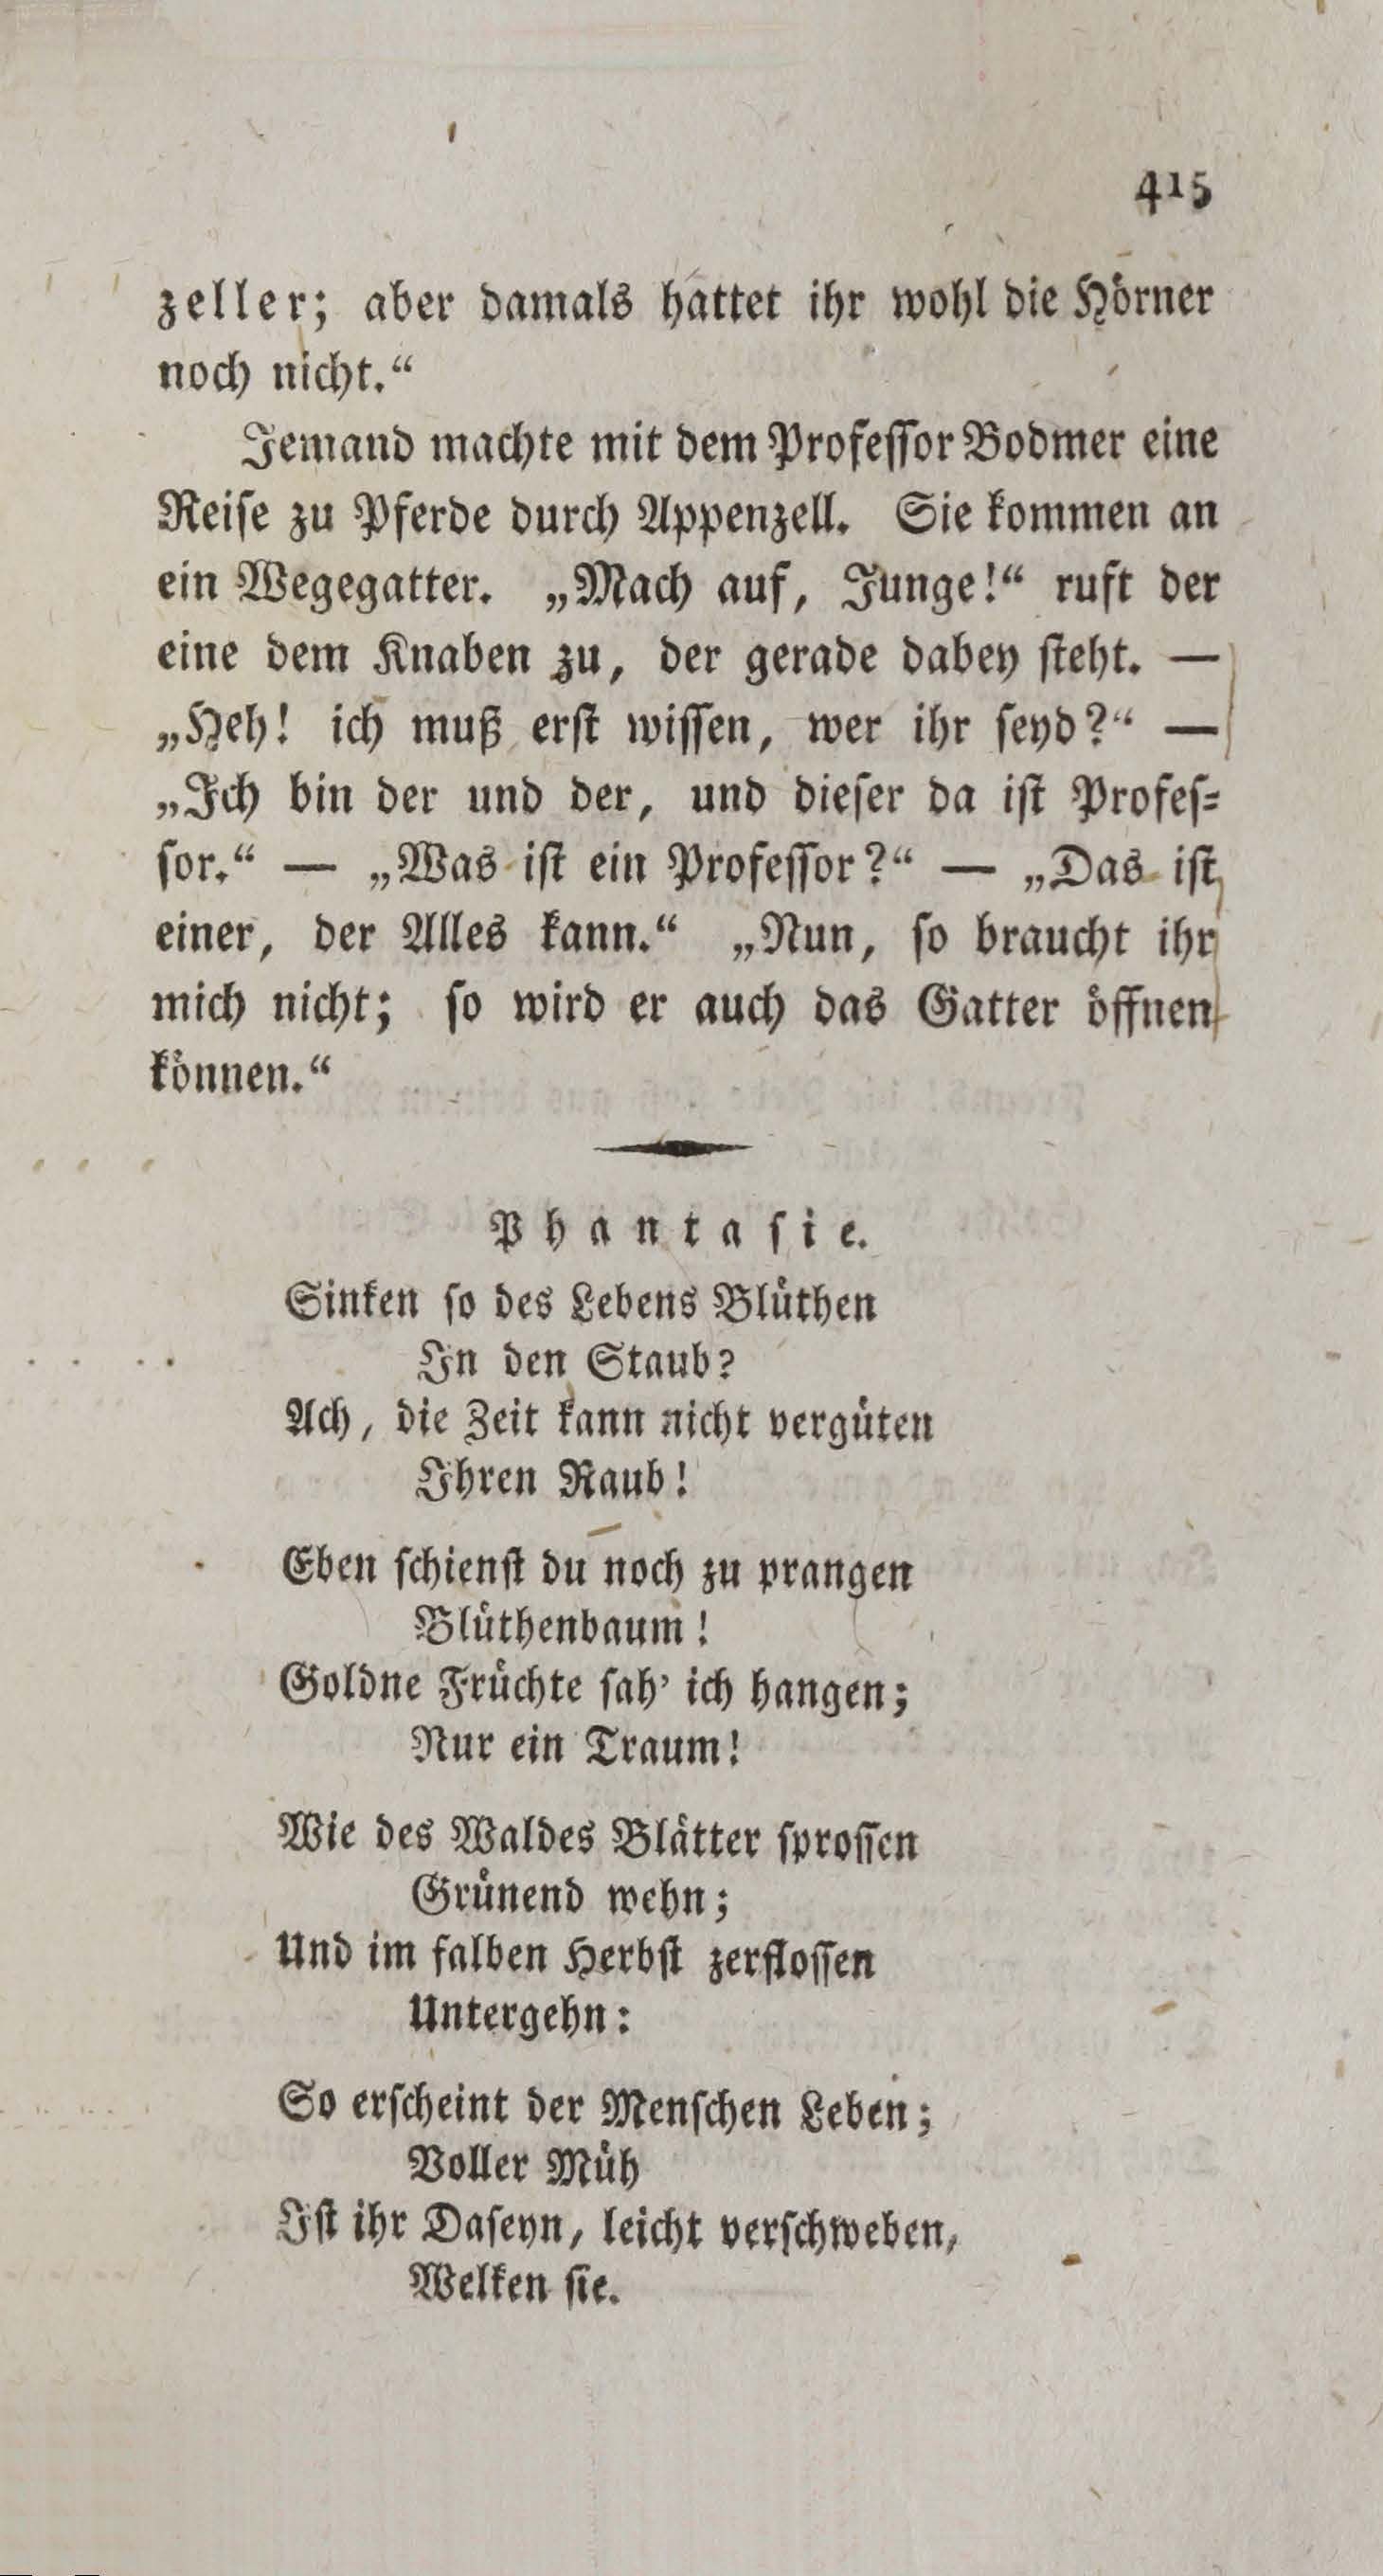 Wöchentliche Unterhaltungen [3] (1806) | 423. (415) Main body of text